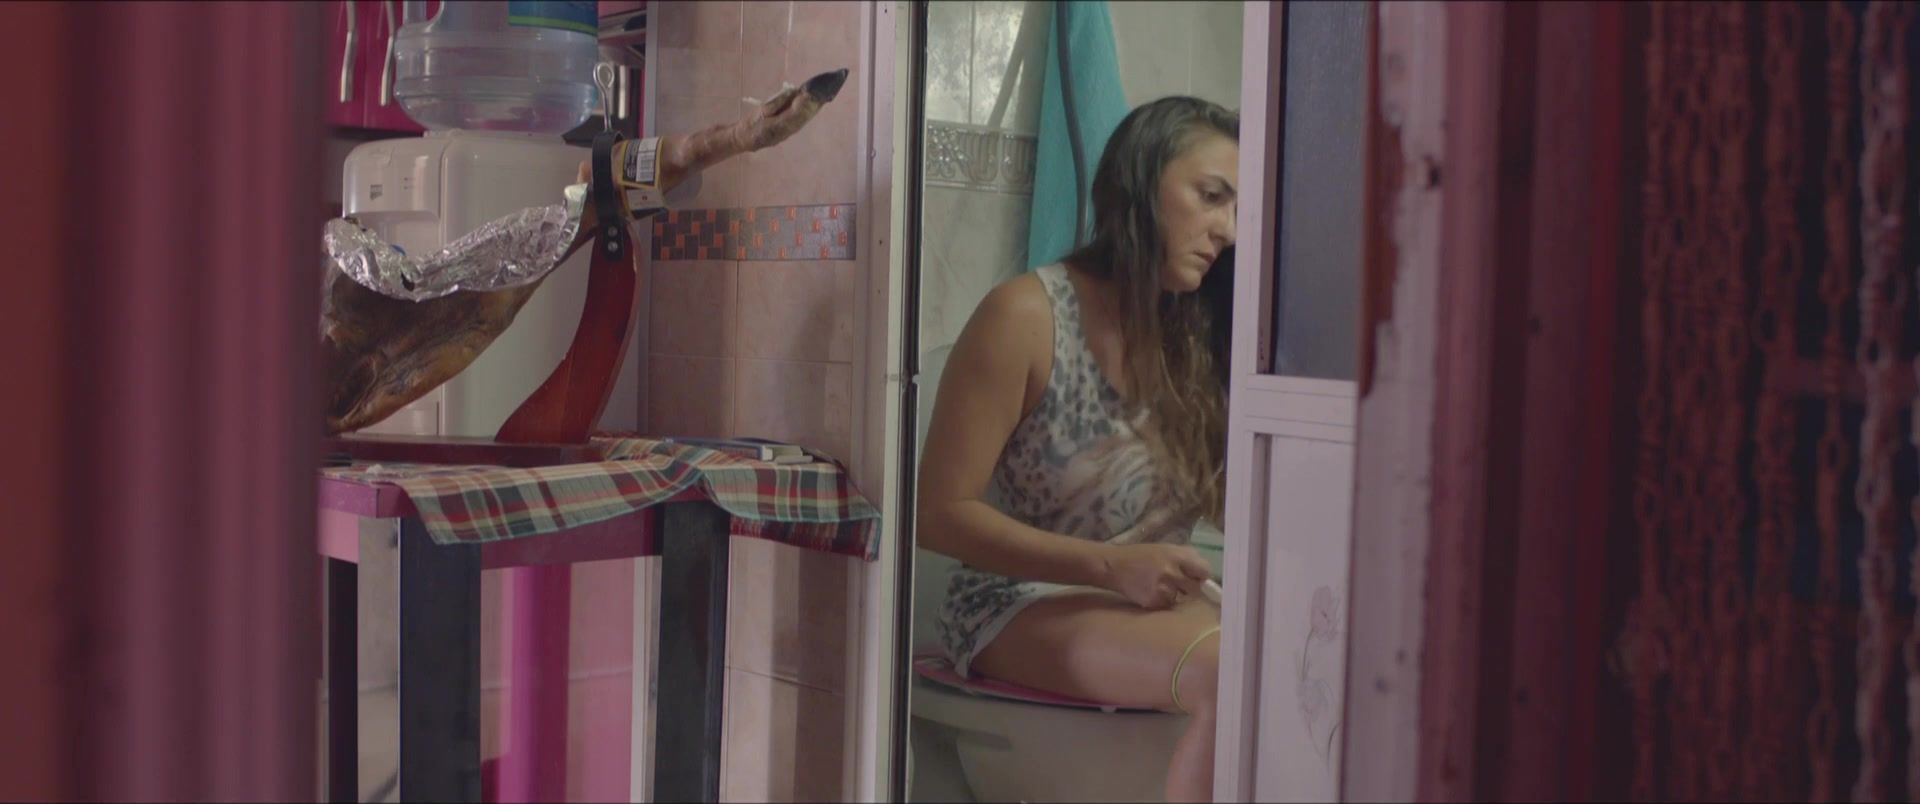 Bigbooty Naked Candela Pena, Claudia Perez Esteban - Kiki, el amor se hace (2016) Wet Pussy